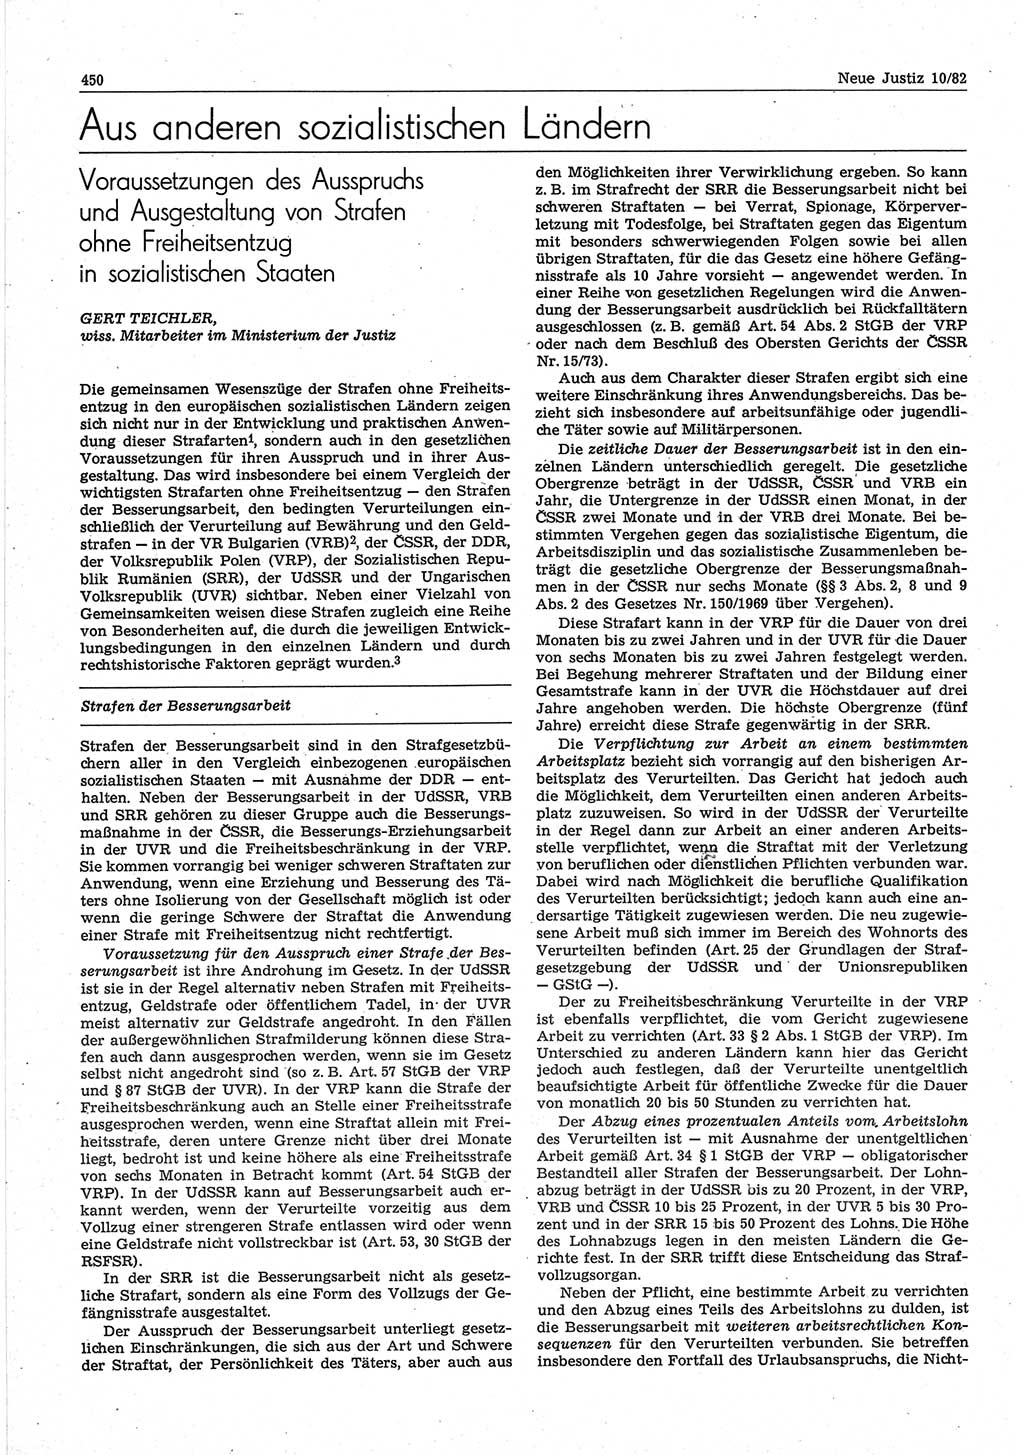 Neue Justiz (NJ), Zeitschrift für sozialistisches Recht und Gesetzlichkeit [Deutsche Demokratische Republik (DDR)], 36. Jahrgang 1982, Seite 450 (NJ DDR 1982, S. 450)